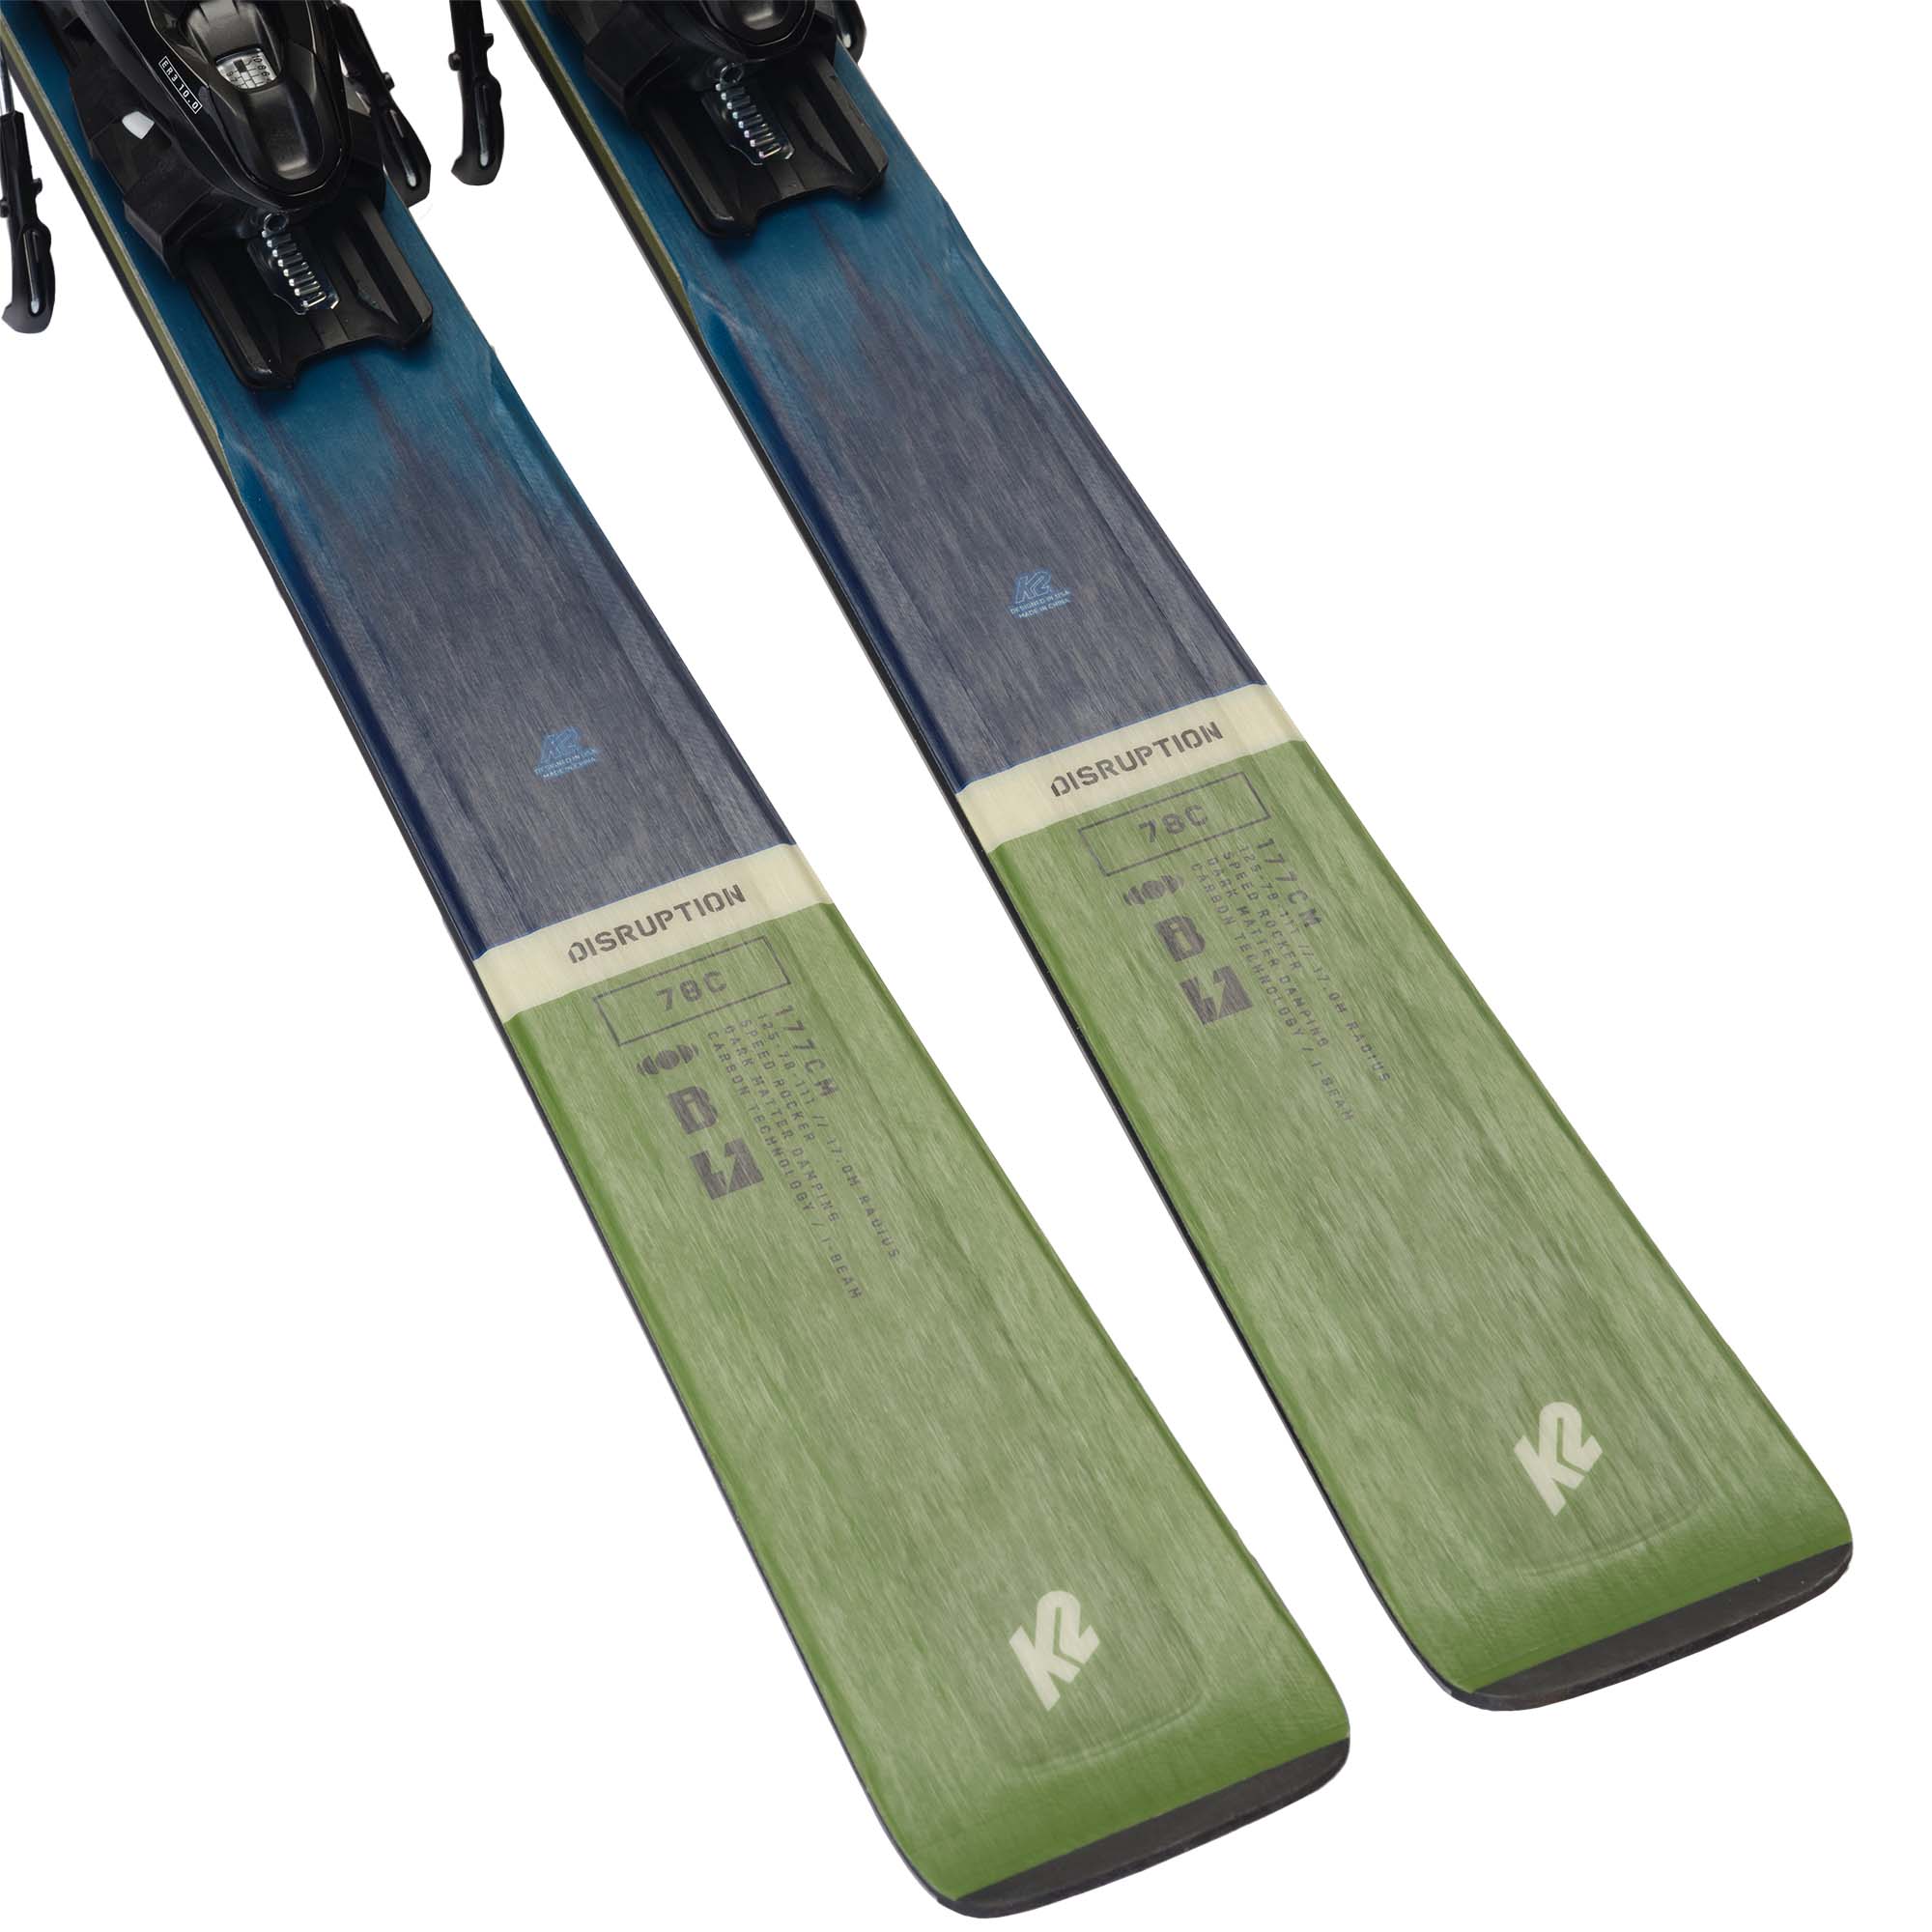 K2 Disruption 78C + M3 11 Compact Quikclik Skis